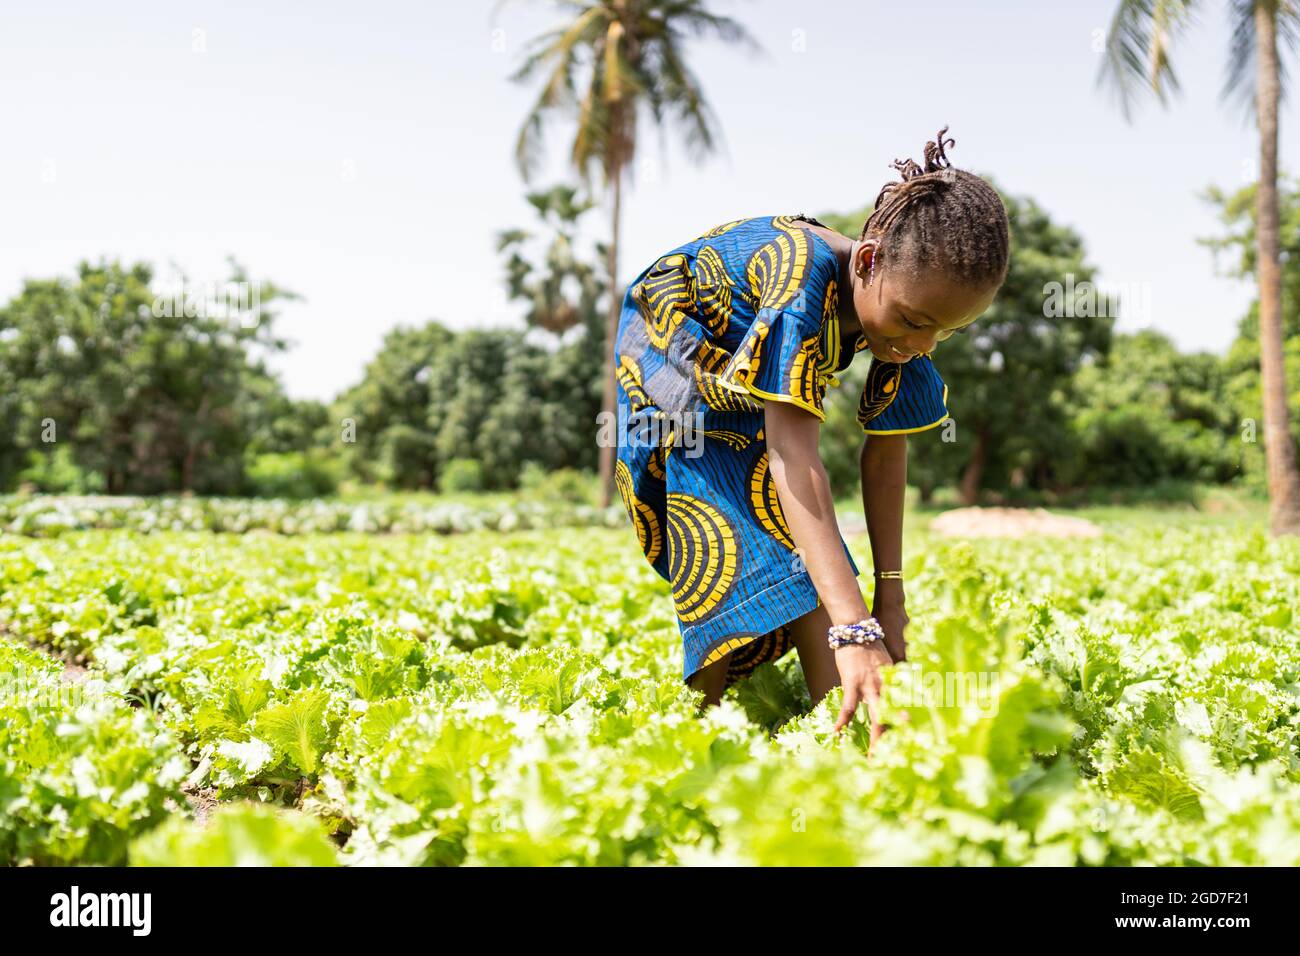 Dans cette image, une petite fille noire récolte des feuilles de laitue sous le soleil brûlant dans une grande plantation en Afrique de l'Ouest; concept de travail des enfants Banque D'Images